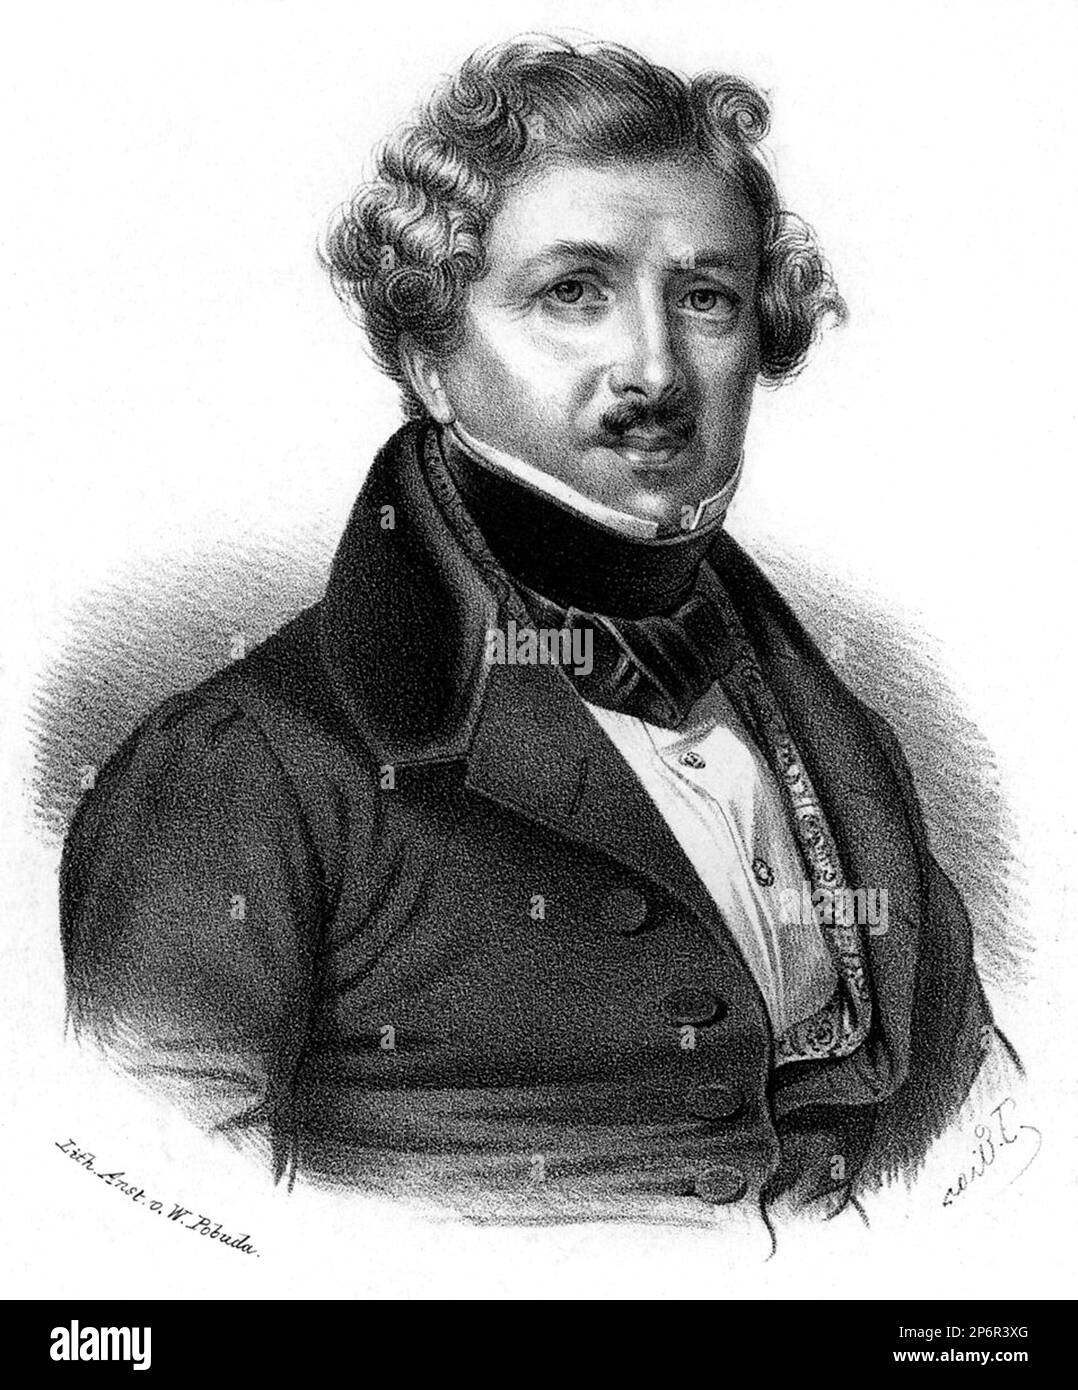 1830 ca : LOUIS JACQUES Mandé DAGUERRE ( 1787 – 1851 ), è stato l'artista e chimico francese riconosciuto per la sua invenzione del processo di fotografia del Daguerreotipo. - Foto storiche - foto storica - scienziato - scienziato - ritratto - FRANCIA - CHIMICO - CHIMICA - CHIMICIAN - FOTOGRAFIA - FOTOGRAFIA - FOTOGRAFO - FOTOGRAFIA - DAGHERROTIPIA - DAGHERROTIPO - cravatta - sci - SCIENZIATO - colletto - incisione - colletto ---- Archivio GBB Foto Stock